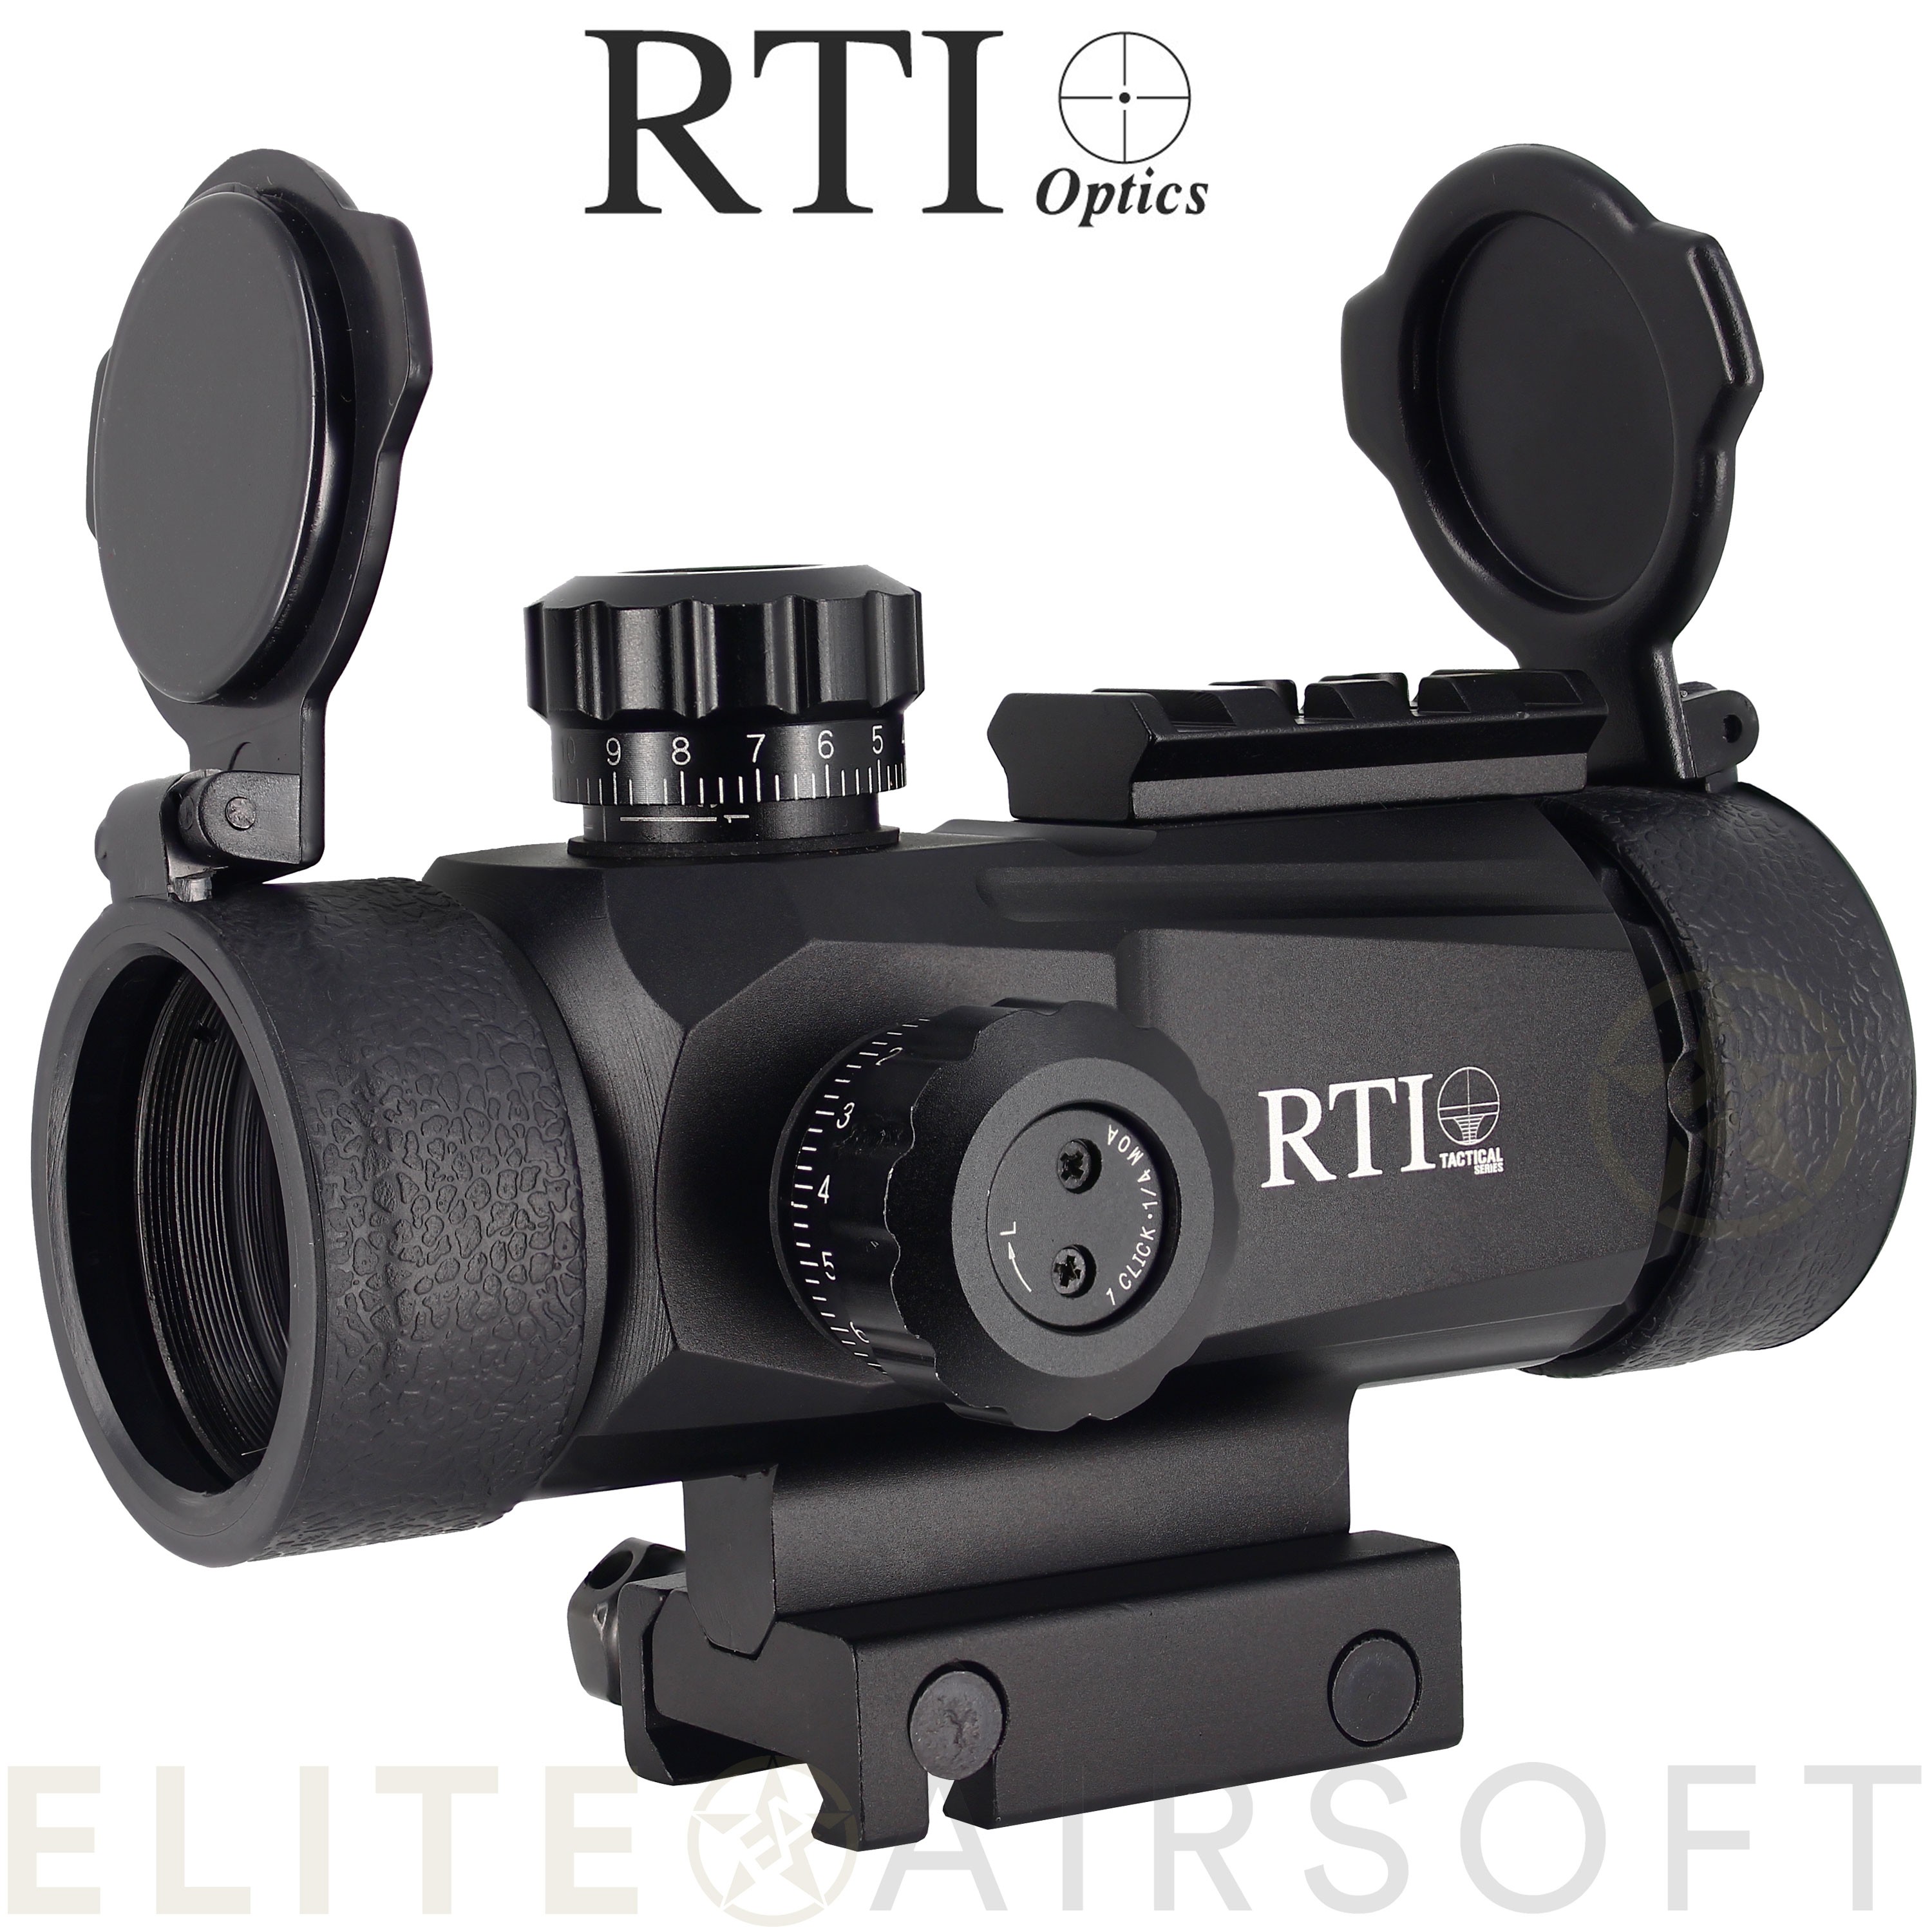 RTI - Viseur point rouge OP 809 picatinny - Noir